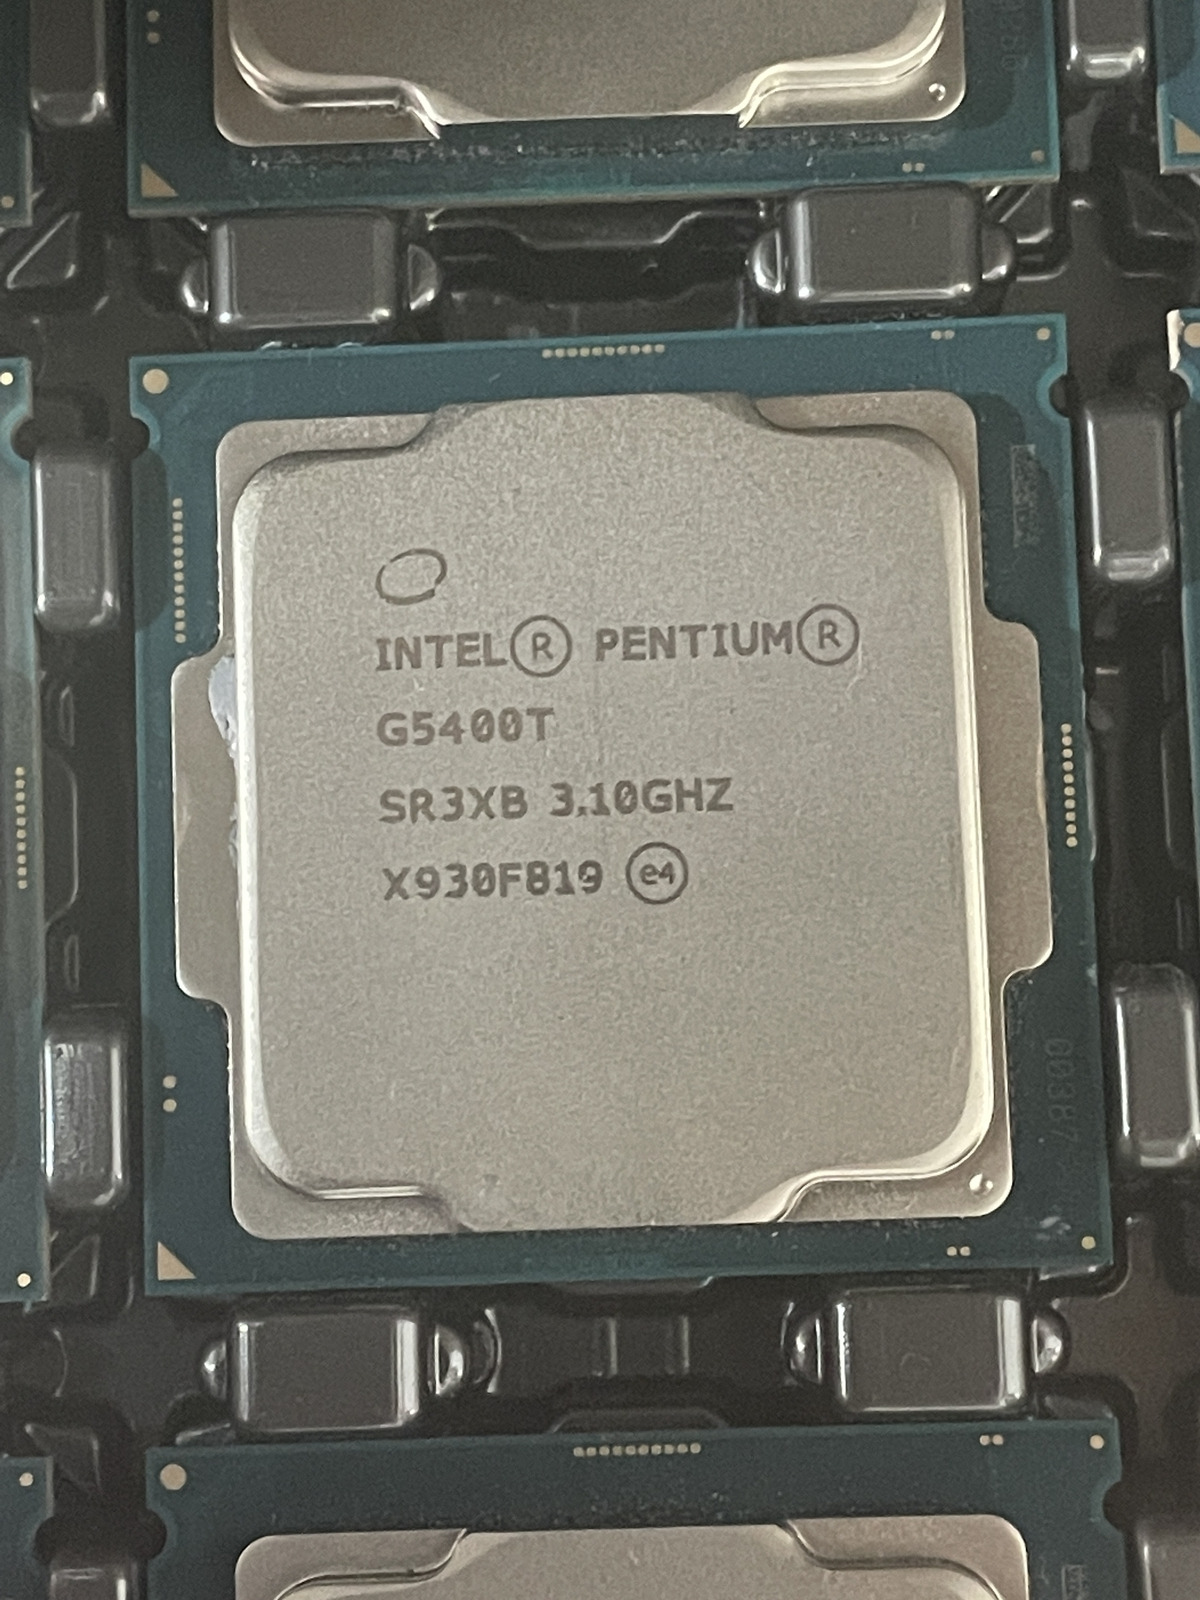 Lot of 30 Intel Pentium G5400T 3.10GHz 4MB SR3XB CPU Processor